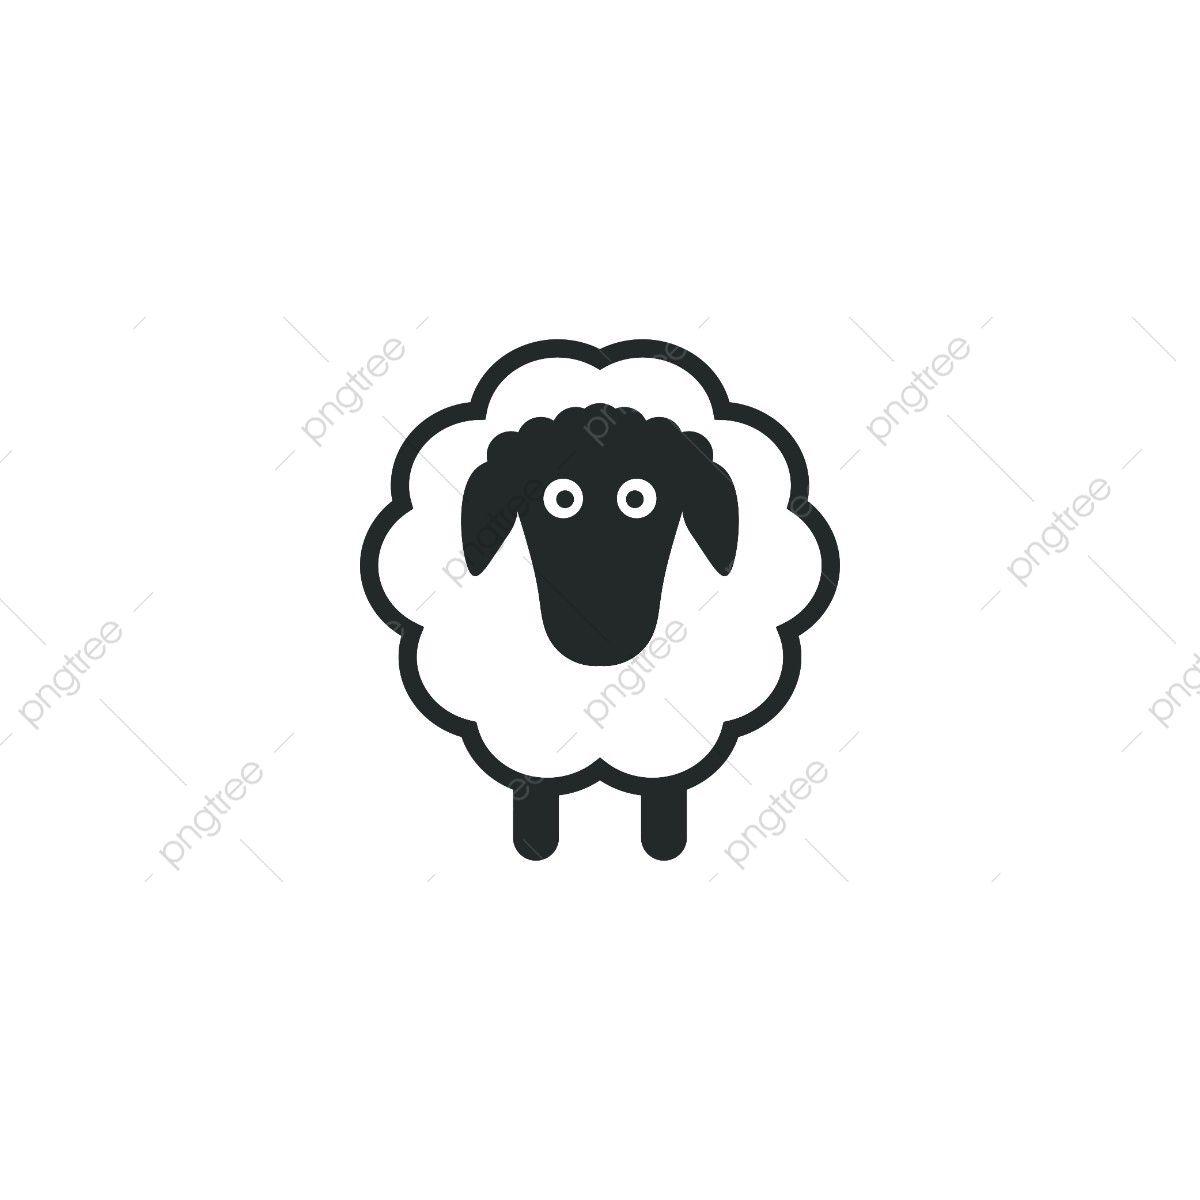 Sheep Logo - Sheep Logo Template, Sheep, Icon, Symbol PNG and Vector